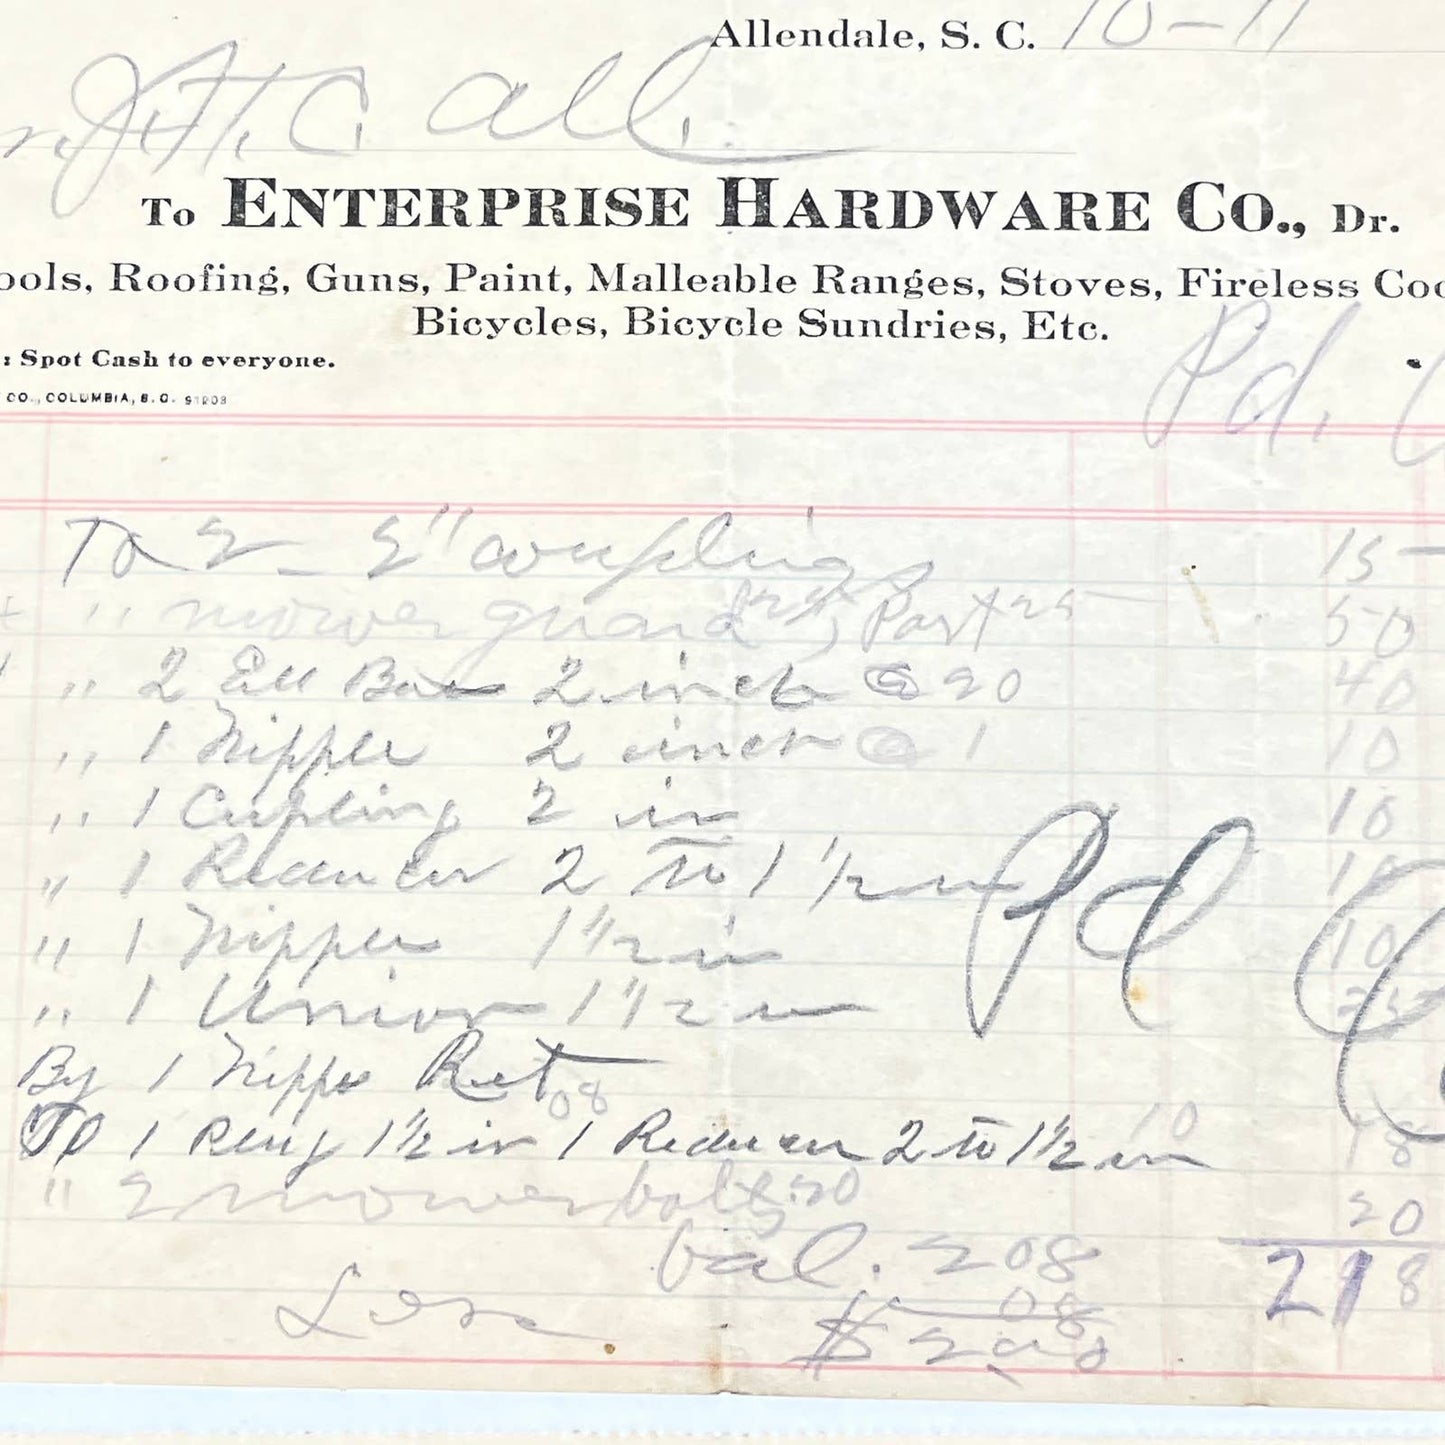 1913 Enterprise Hardware Co Letterhead Receipt Allendale SC Set of 2 AC3-1